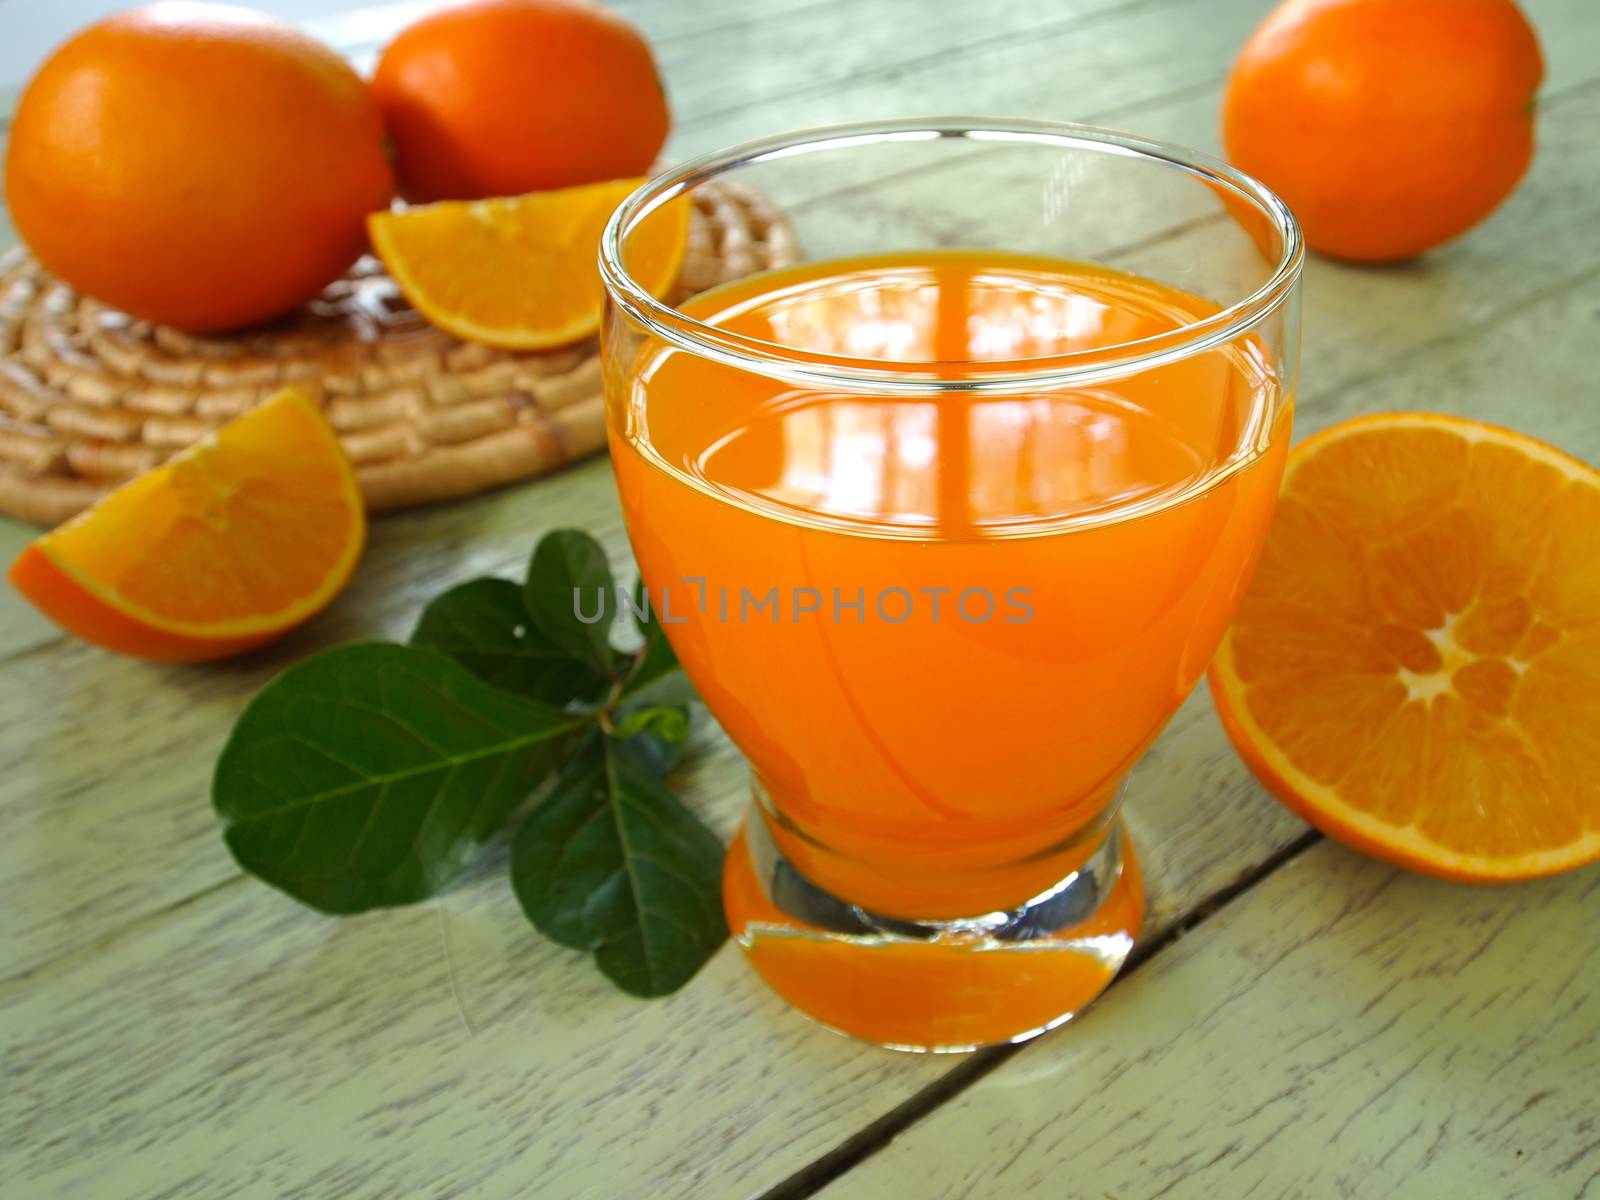 orange juice by utah778